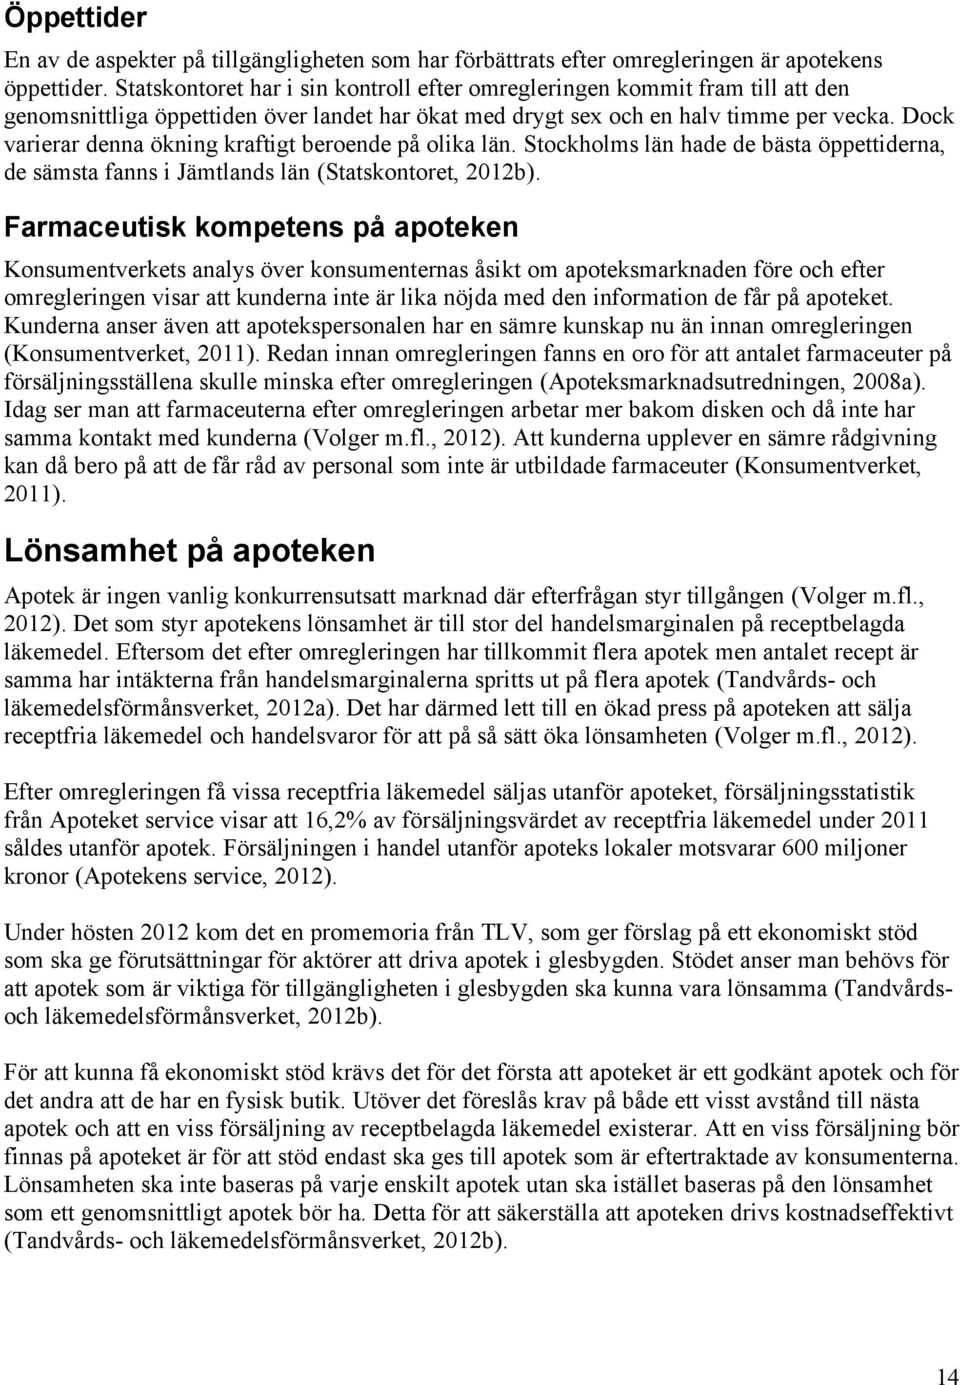 Dock varierar denna ökning kraftigt beroende på olika län. Stockholms län hade de bästa öppettiderna, de sämsta fanns i Jämtlands län (Statskontoret, 2012b).